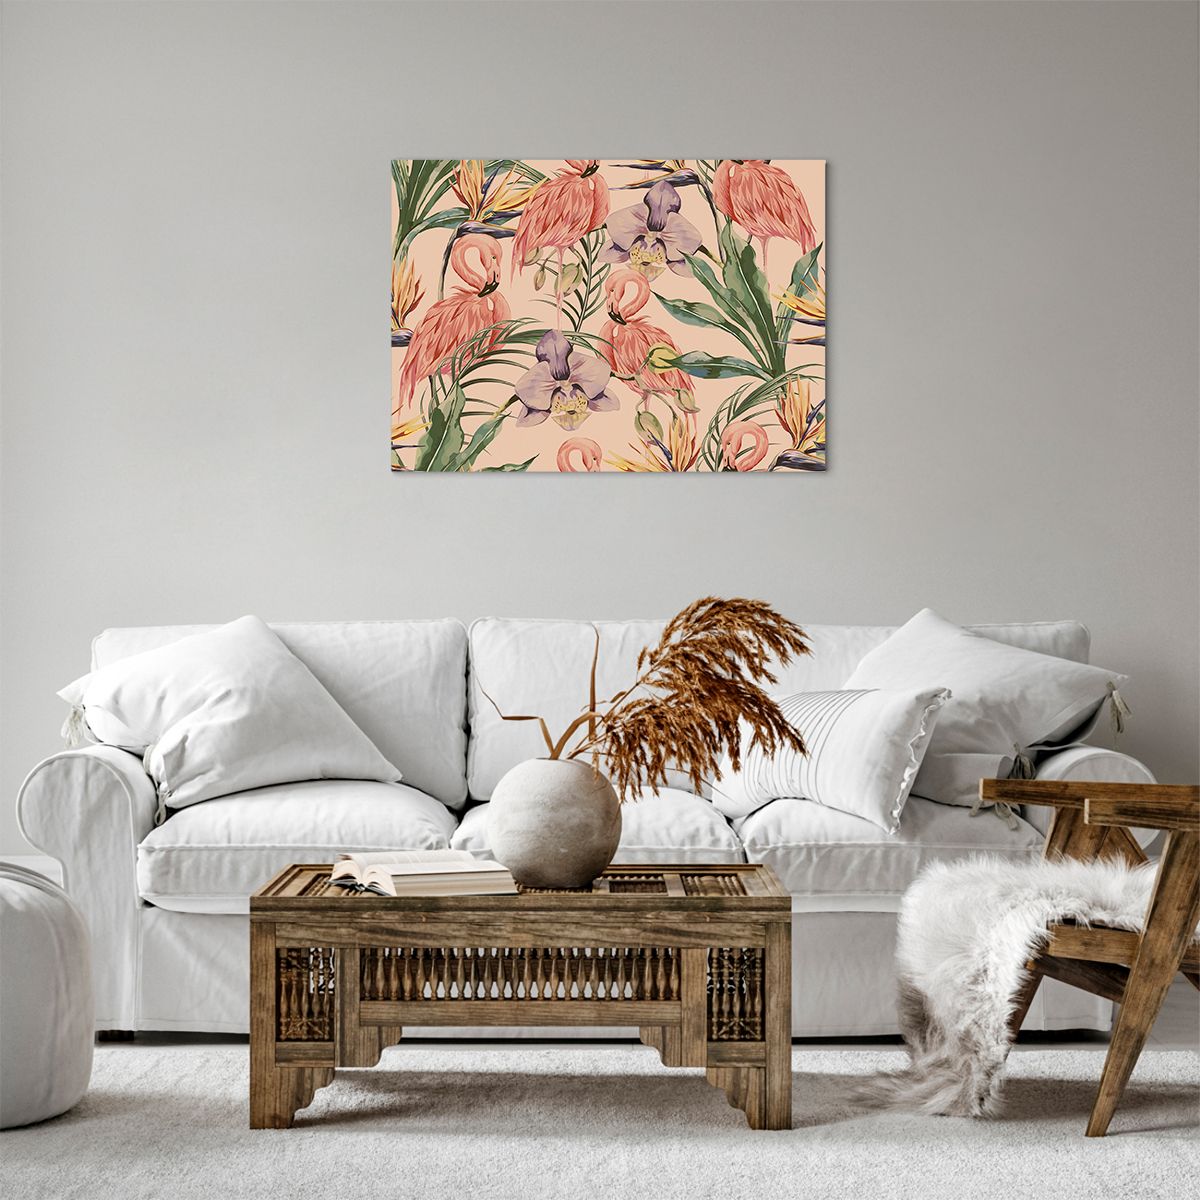 Bild auf Leinwand Vogel, Bild auf Leinwand Flamingo, Bild auf Leinwand Urwald, Bild auf Leinwand Palmblatt, Bild auf Leinwand Grafik